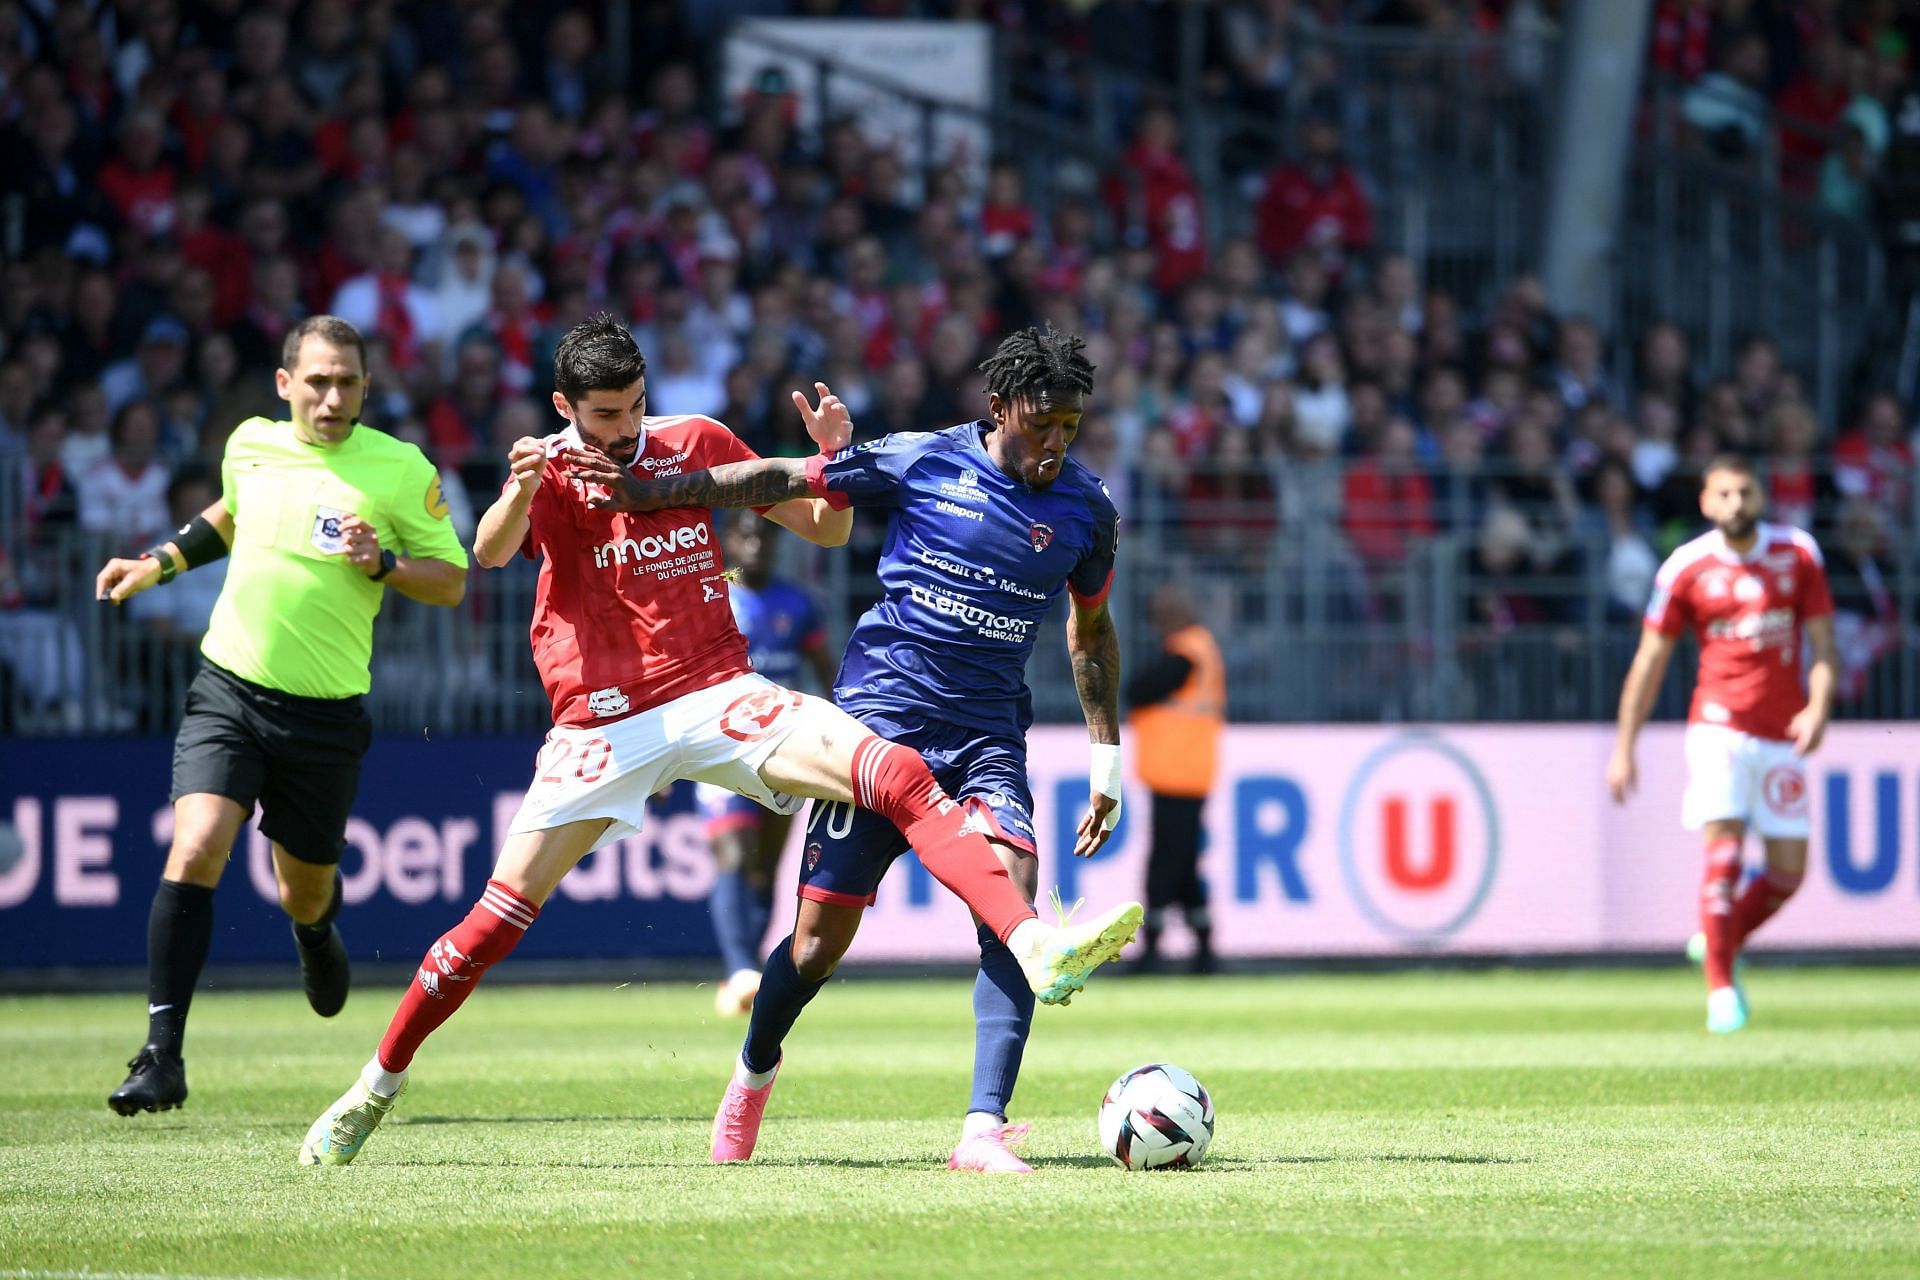 Brest will host Strasbourg in the Ligue 1 on Thursday